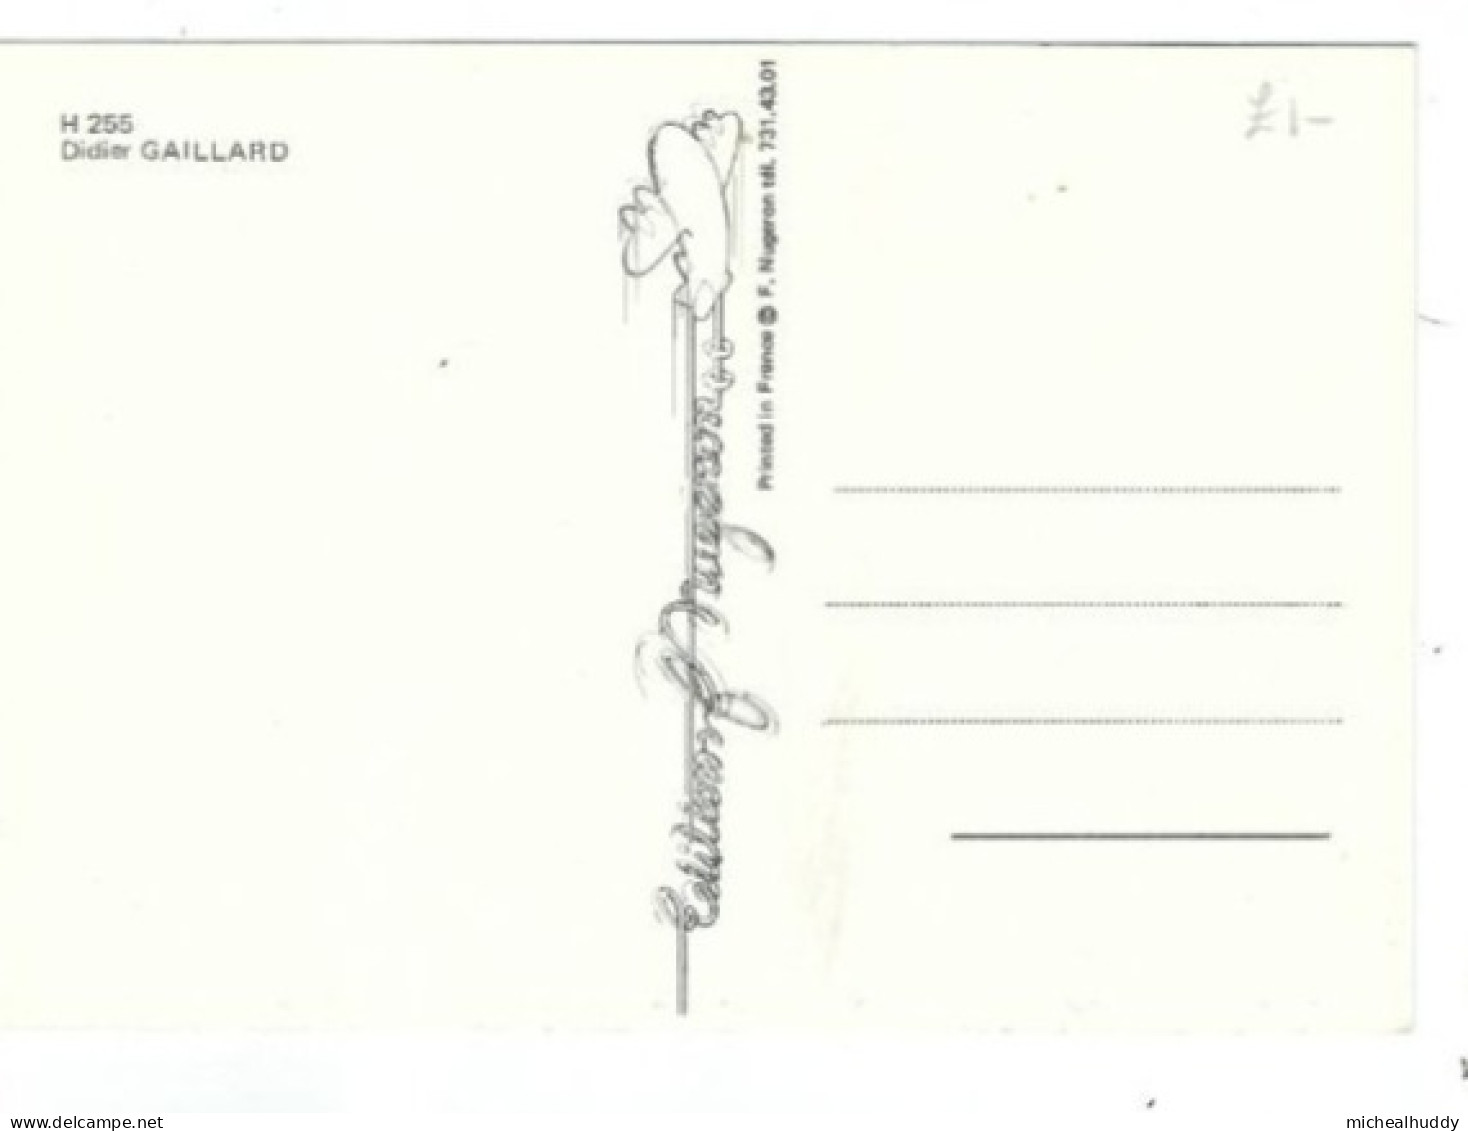 PUBL BY EDITIONS NUGERON  ILLUSTRATEURS SERIES     DIDIER GAILLARD  CARD NO H 255 - Contemporánea (desde 1950)